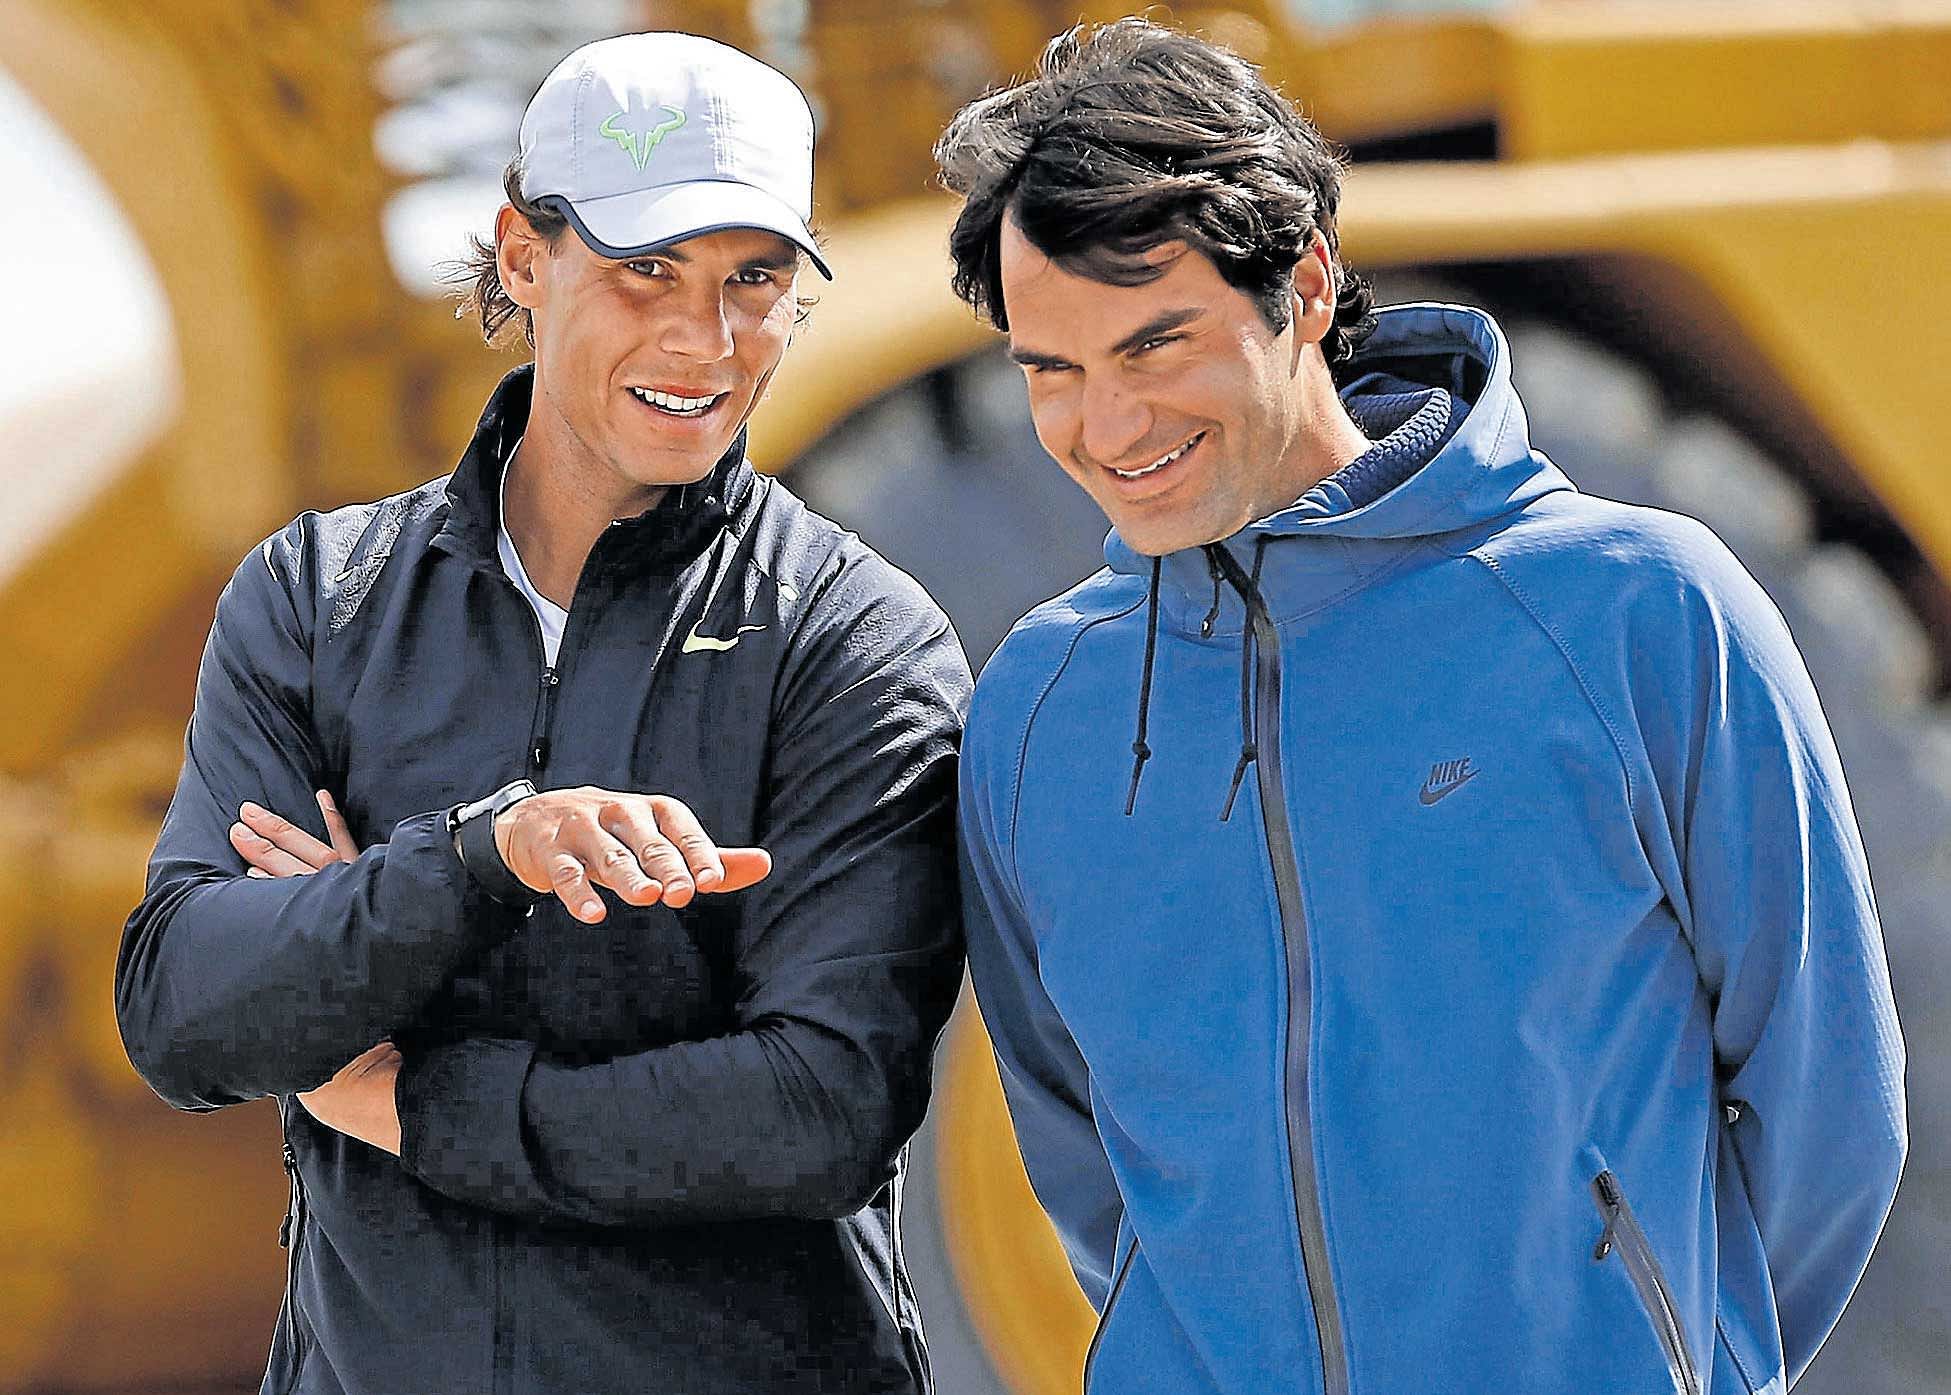 Rafael Nadal and Roger Federer.